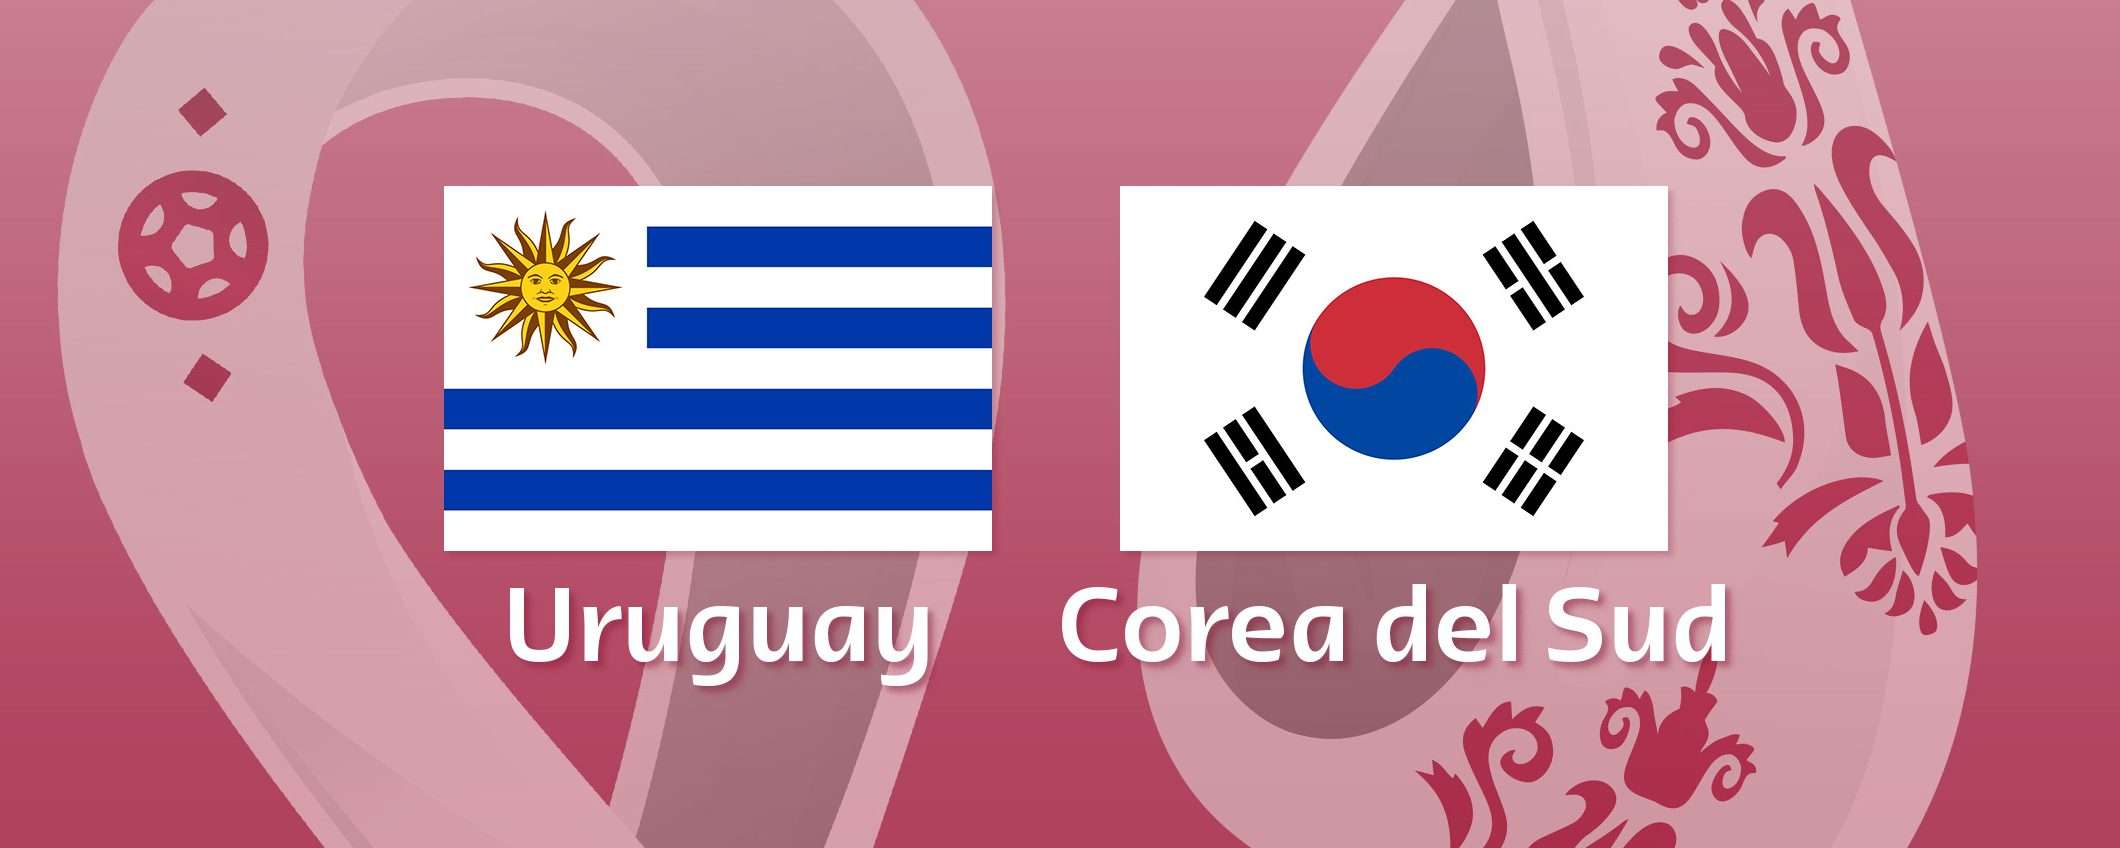 Come vedere Uruguay-Corea del Sud in streaming (Mondiali)